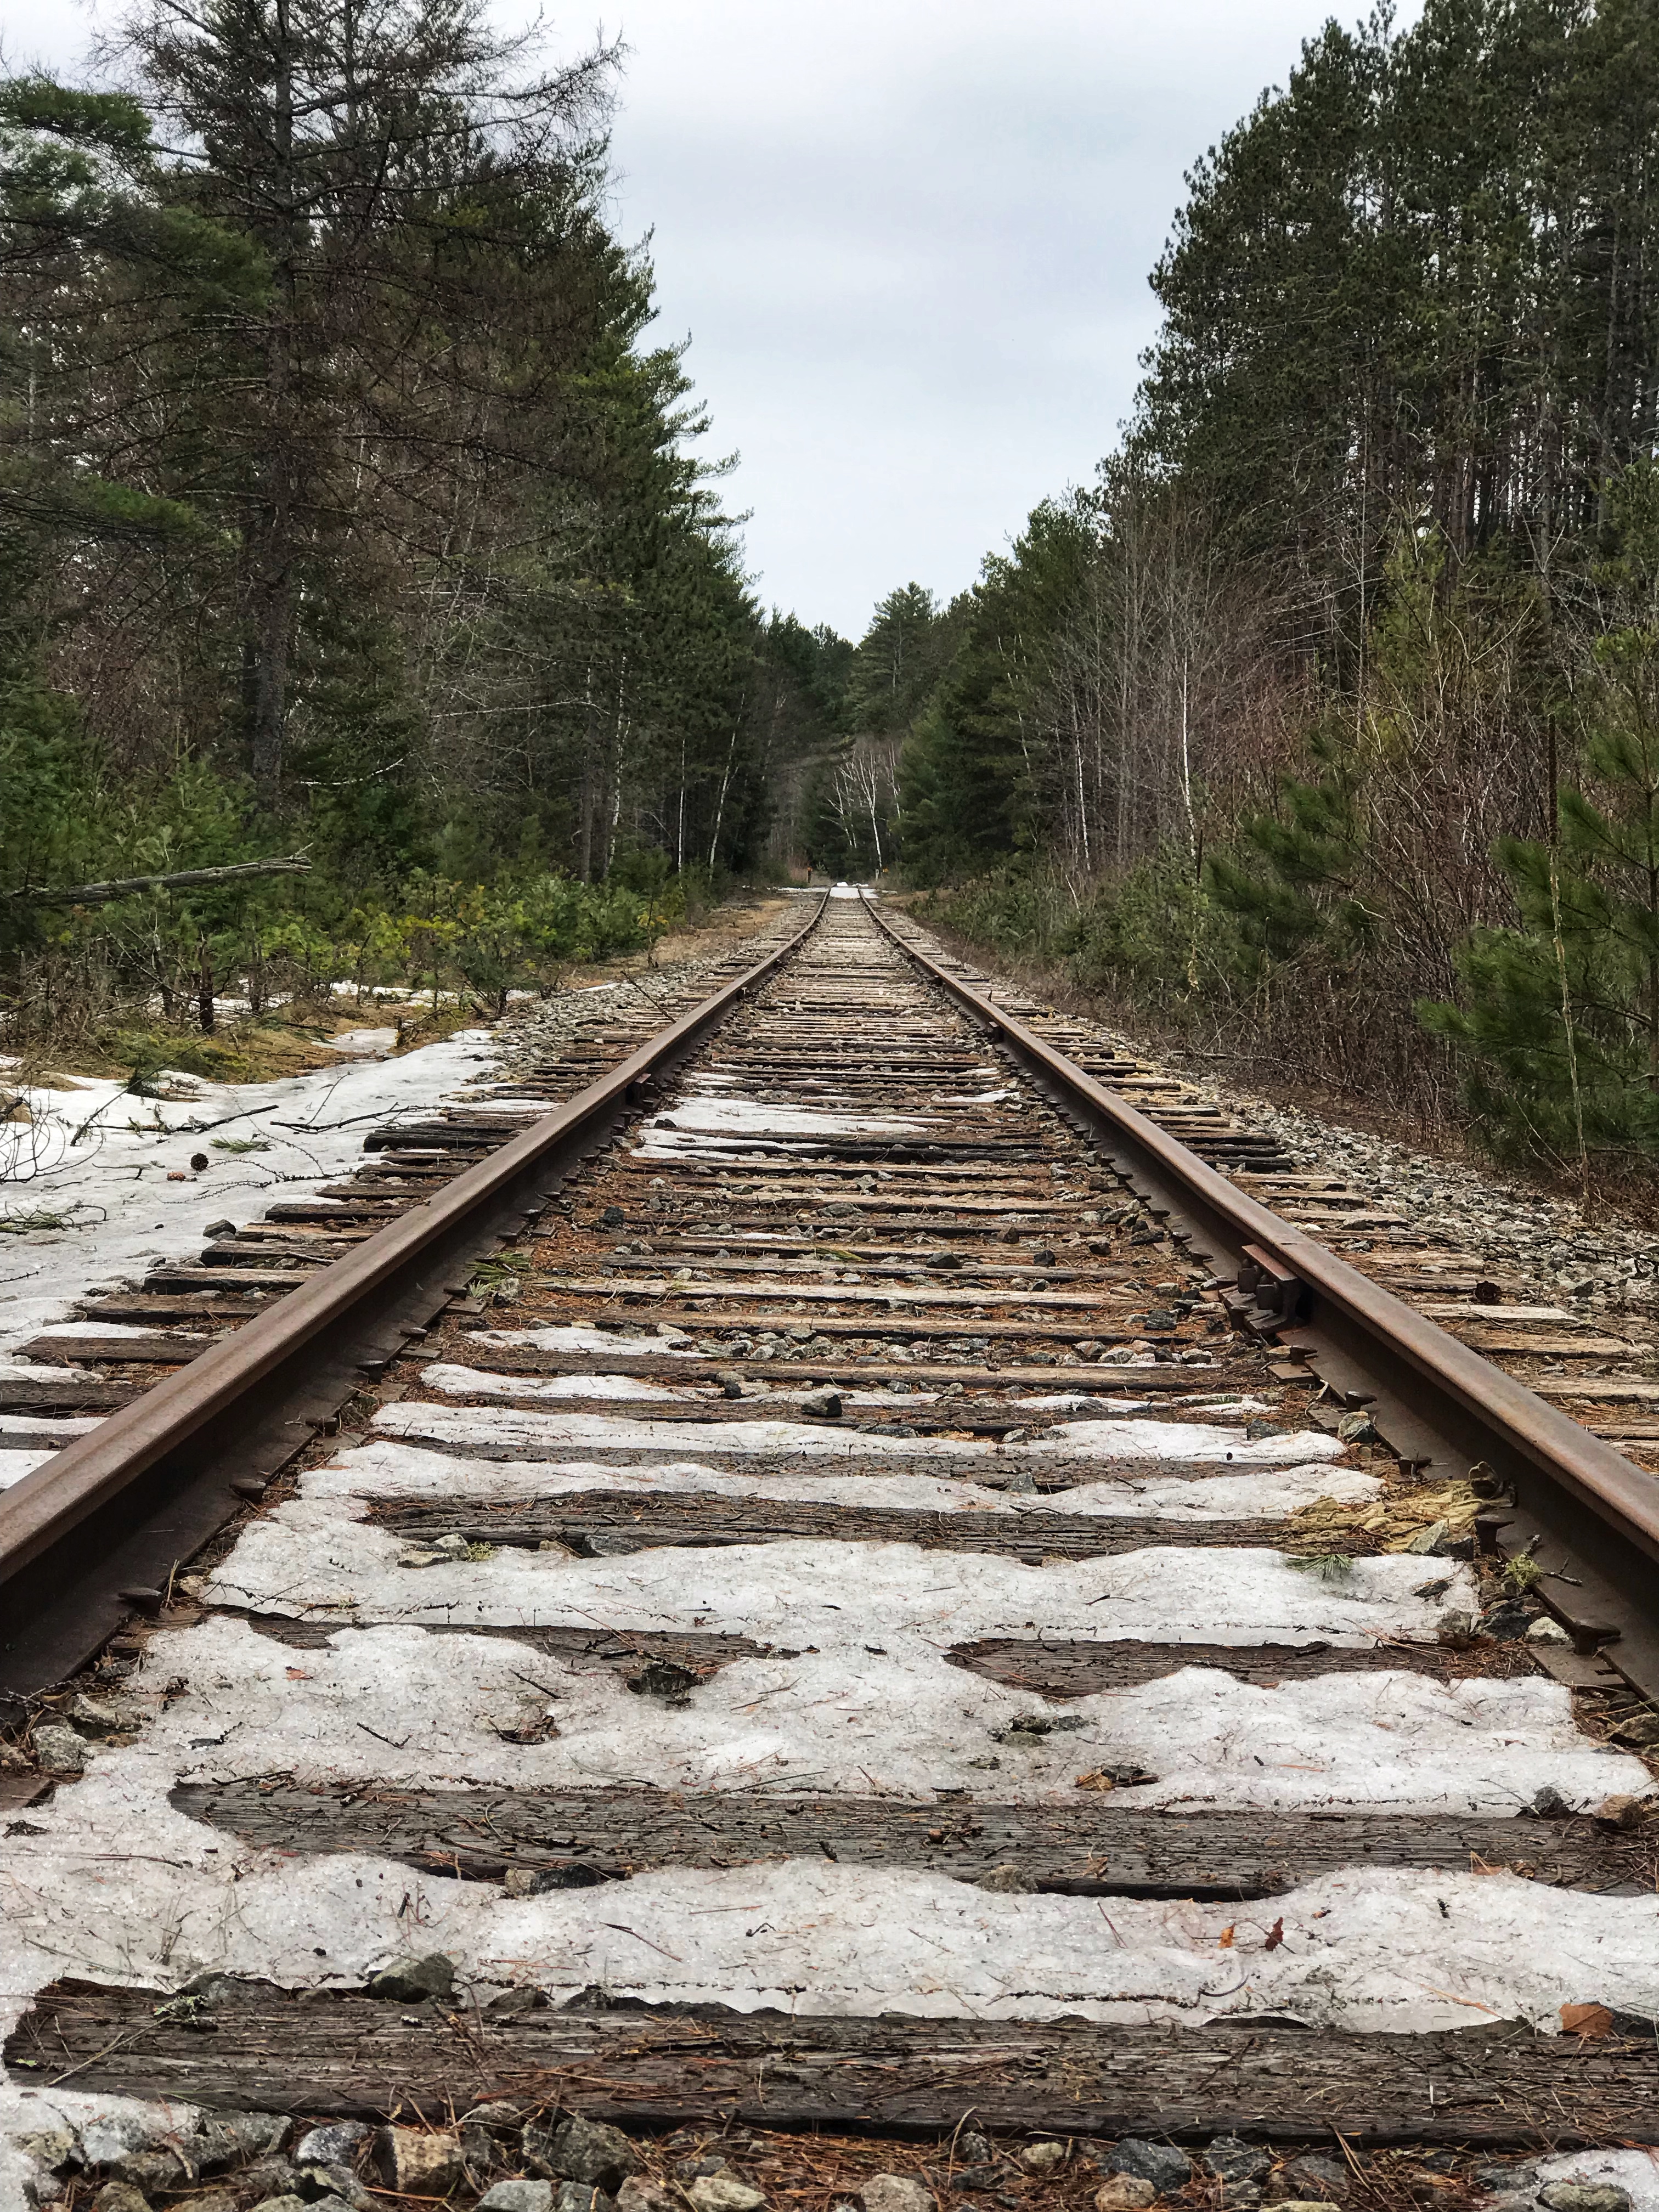 Scarface: Railroad tracks